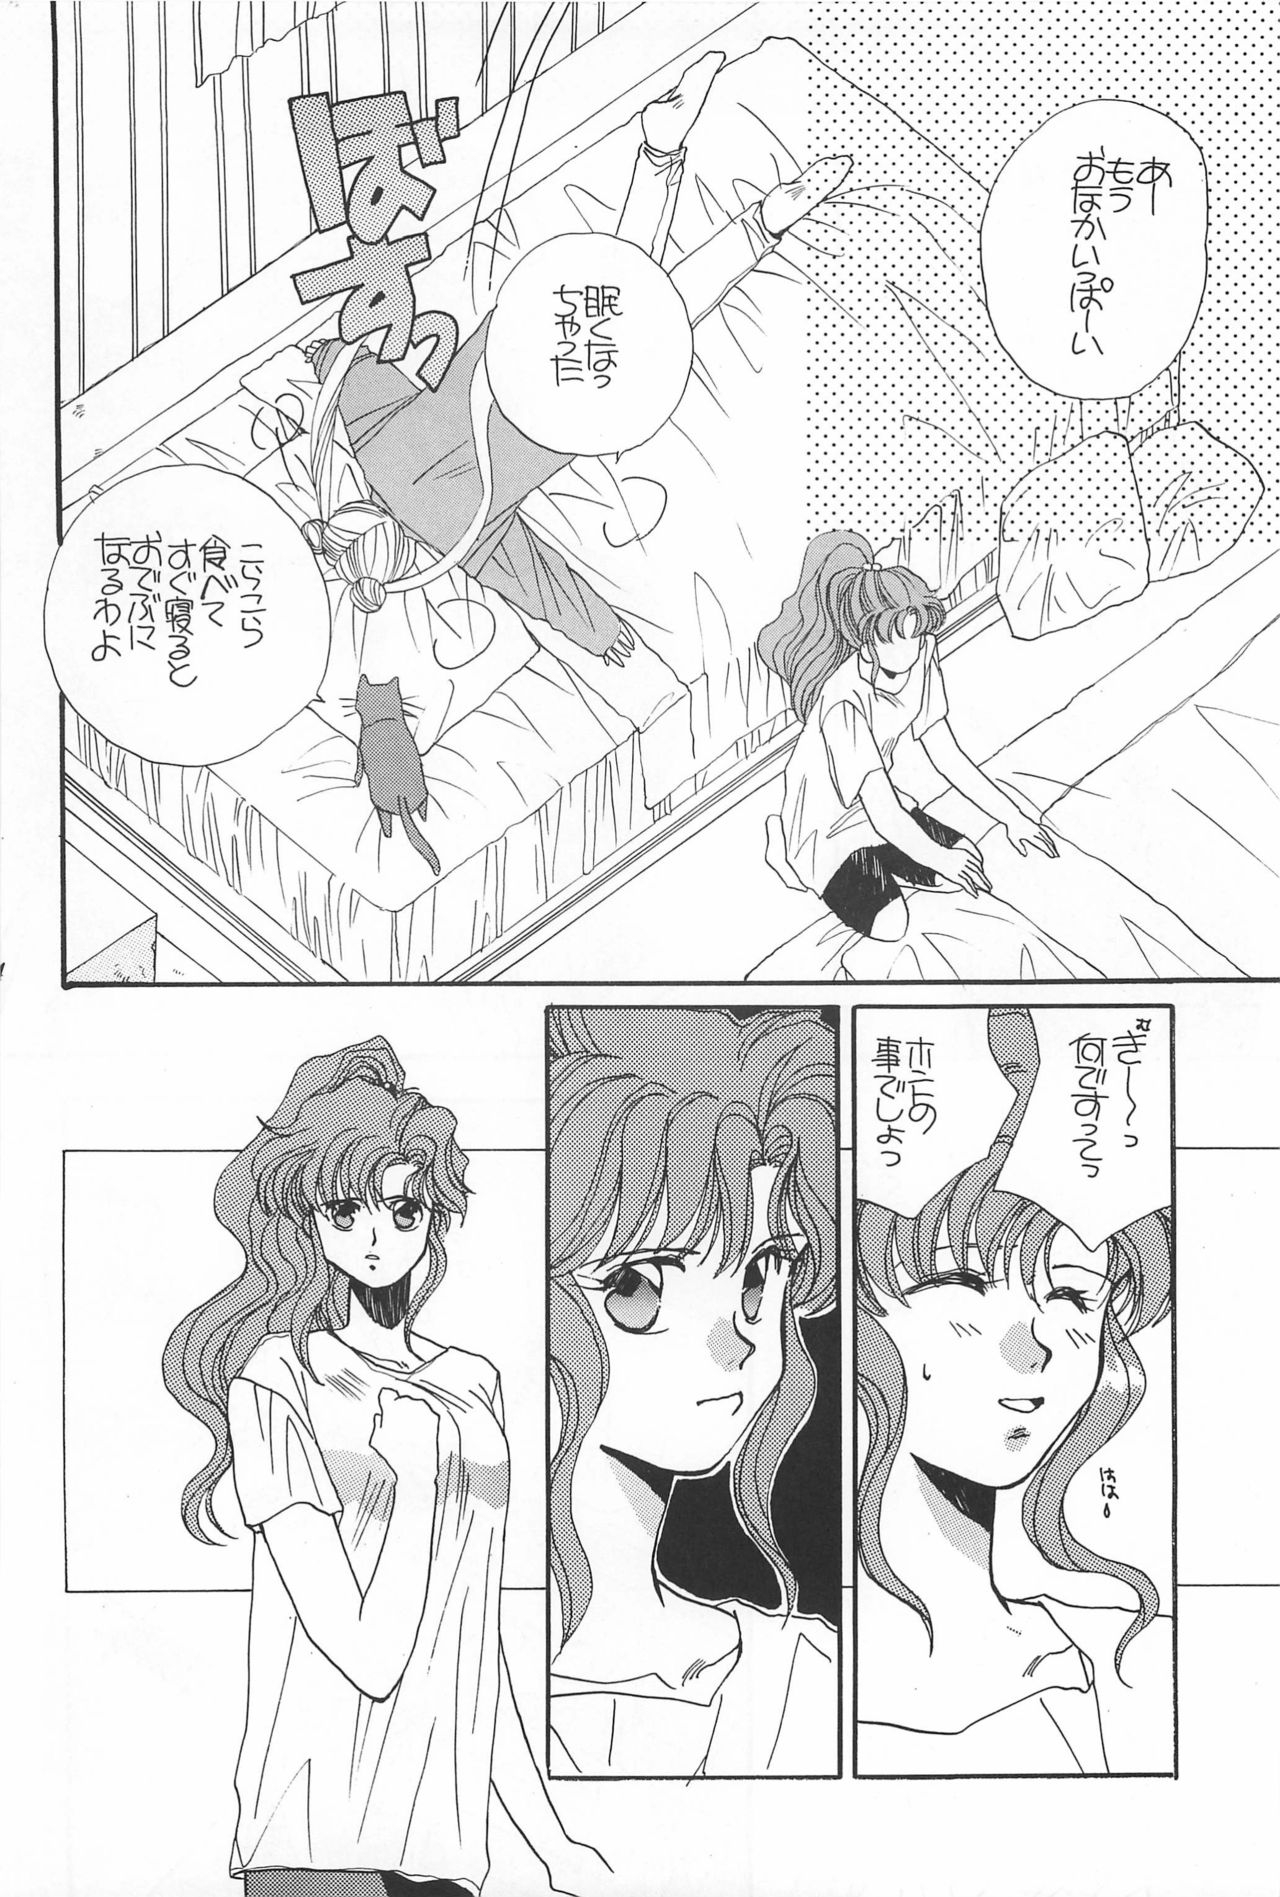 [Hello World (Muttri Moony)] Kaze no You ni Yume no You ni - Sailor Moon Collection (Sailor Moon) 153